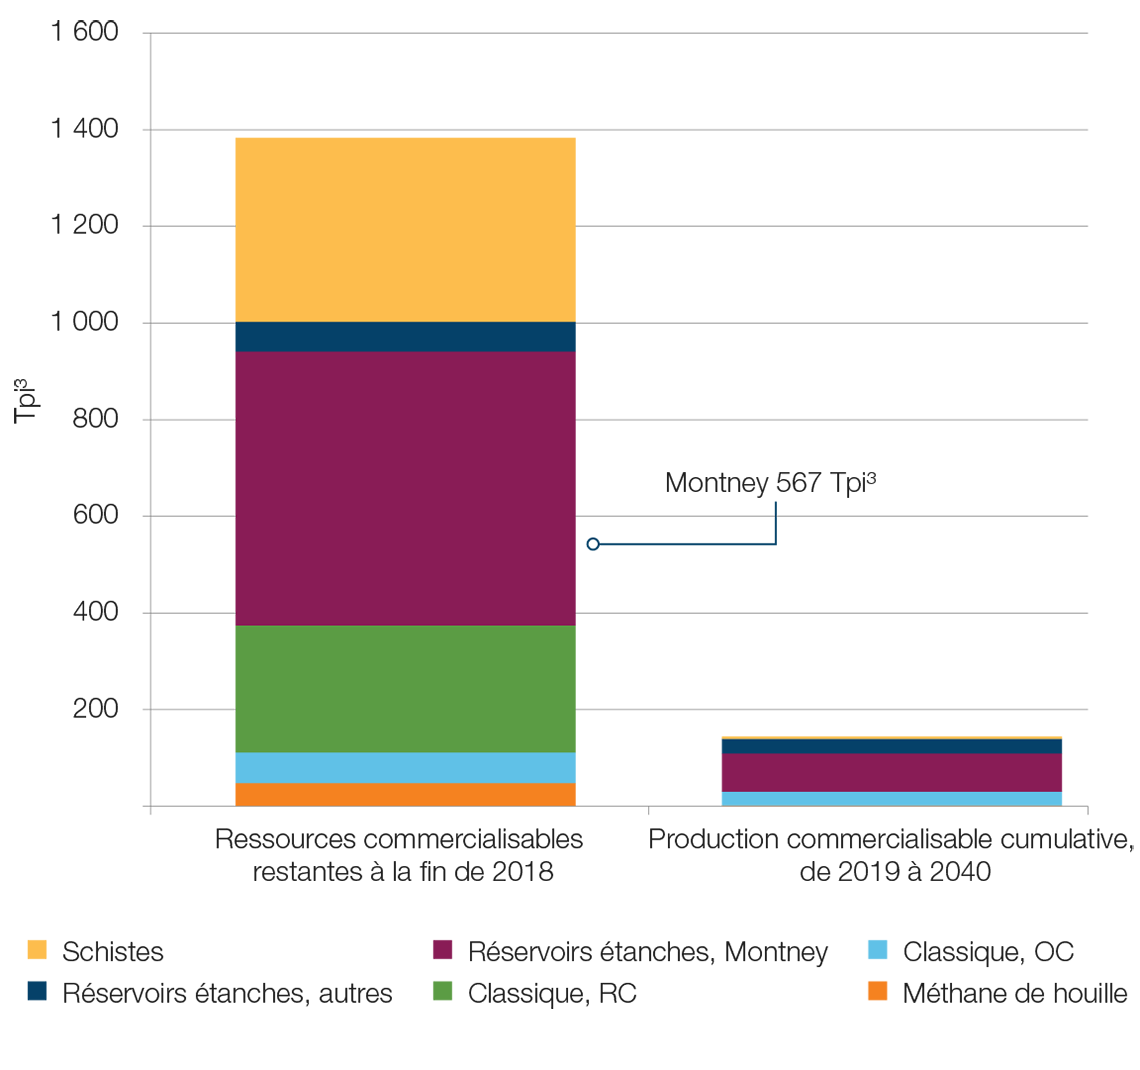 Ressources en gaz naturel comparativement à production cumulative, de 2019 à 2040